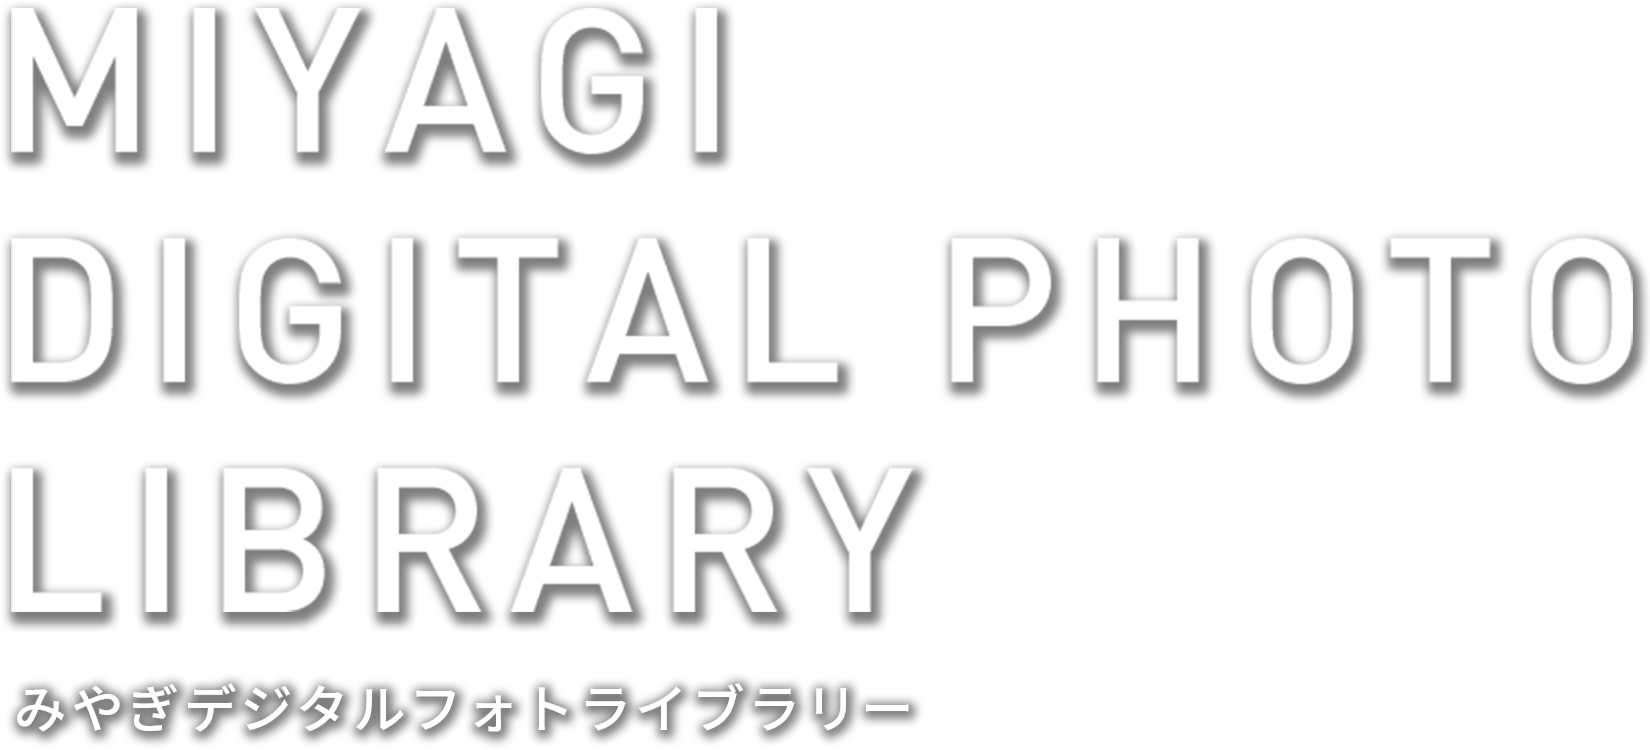 MIYAGI DIGITAL PHOTO LIBRARY みやぎデジタルフォトライブラリー